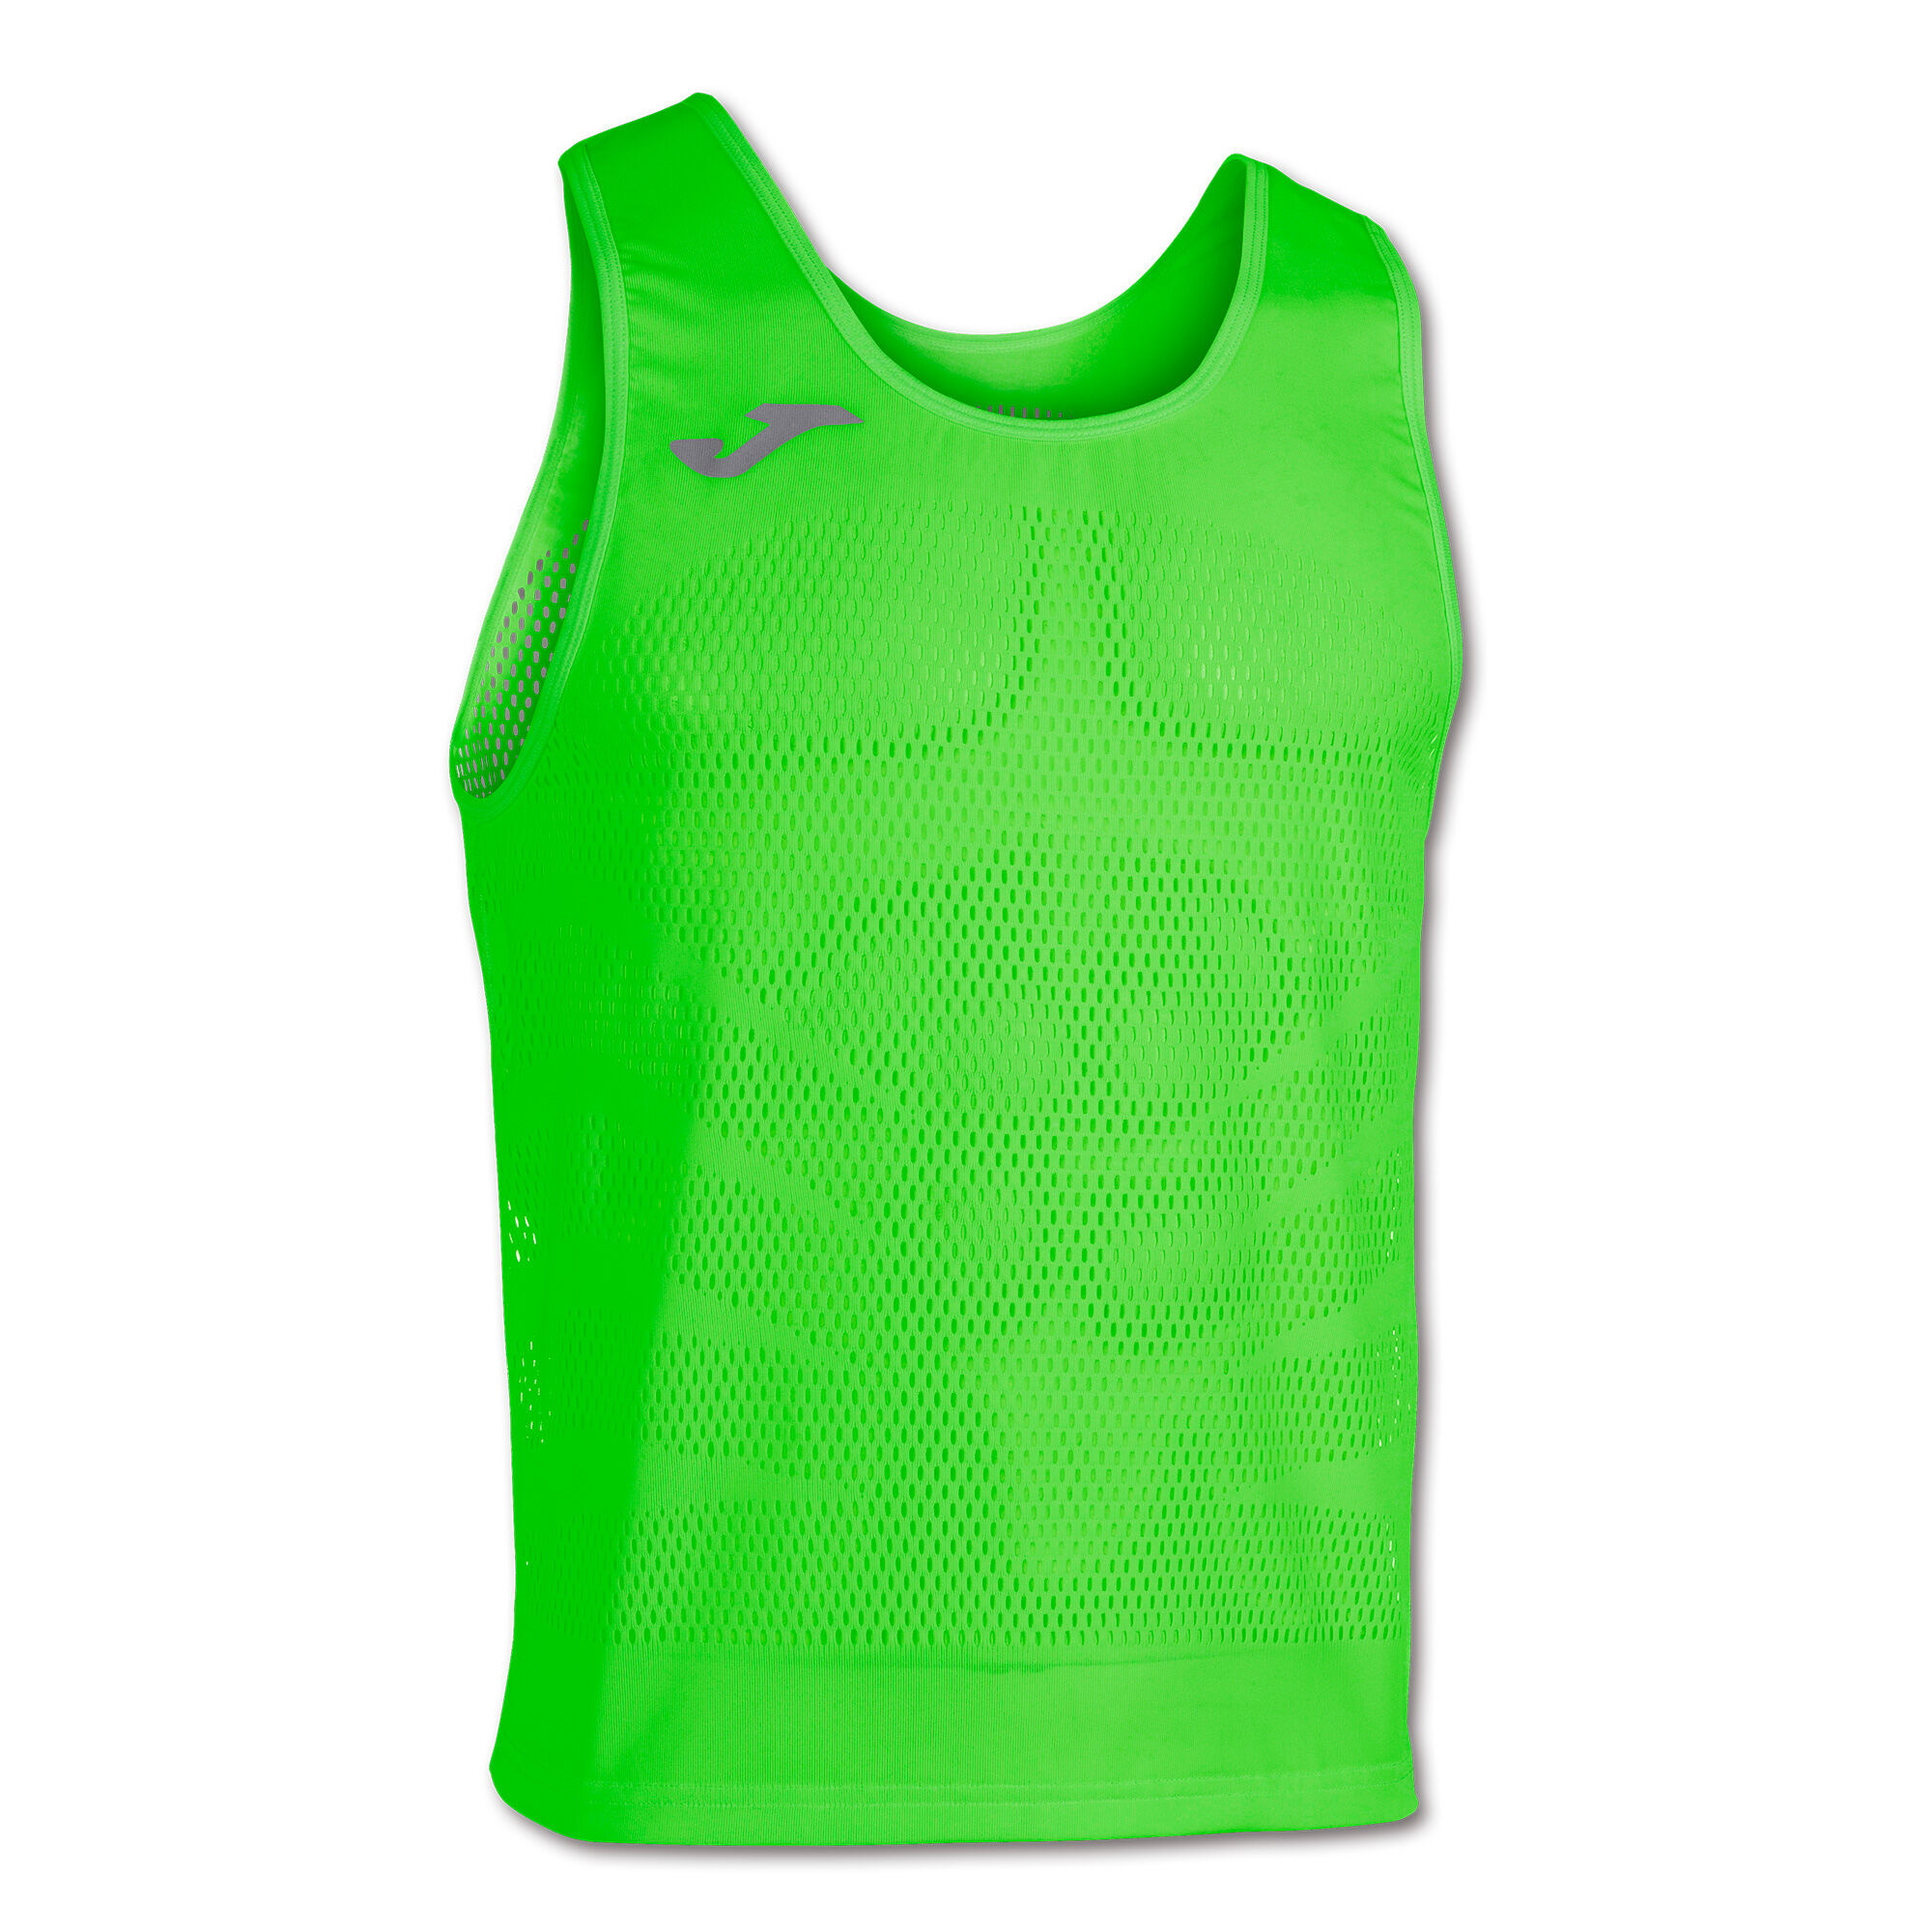 Koszulka na ramiączkach mężczyźni Marathon fluorescencyjny zielony